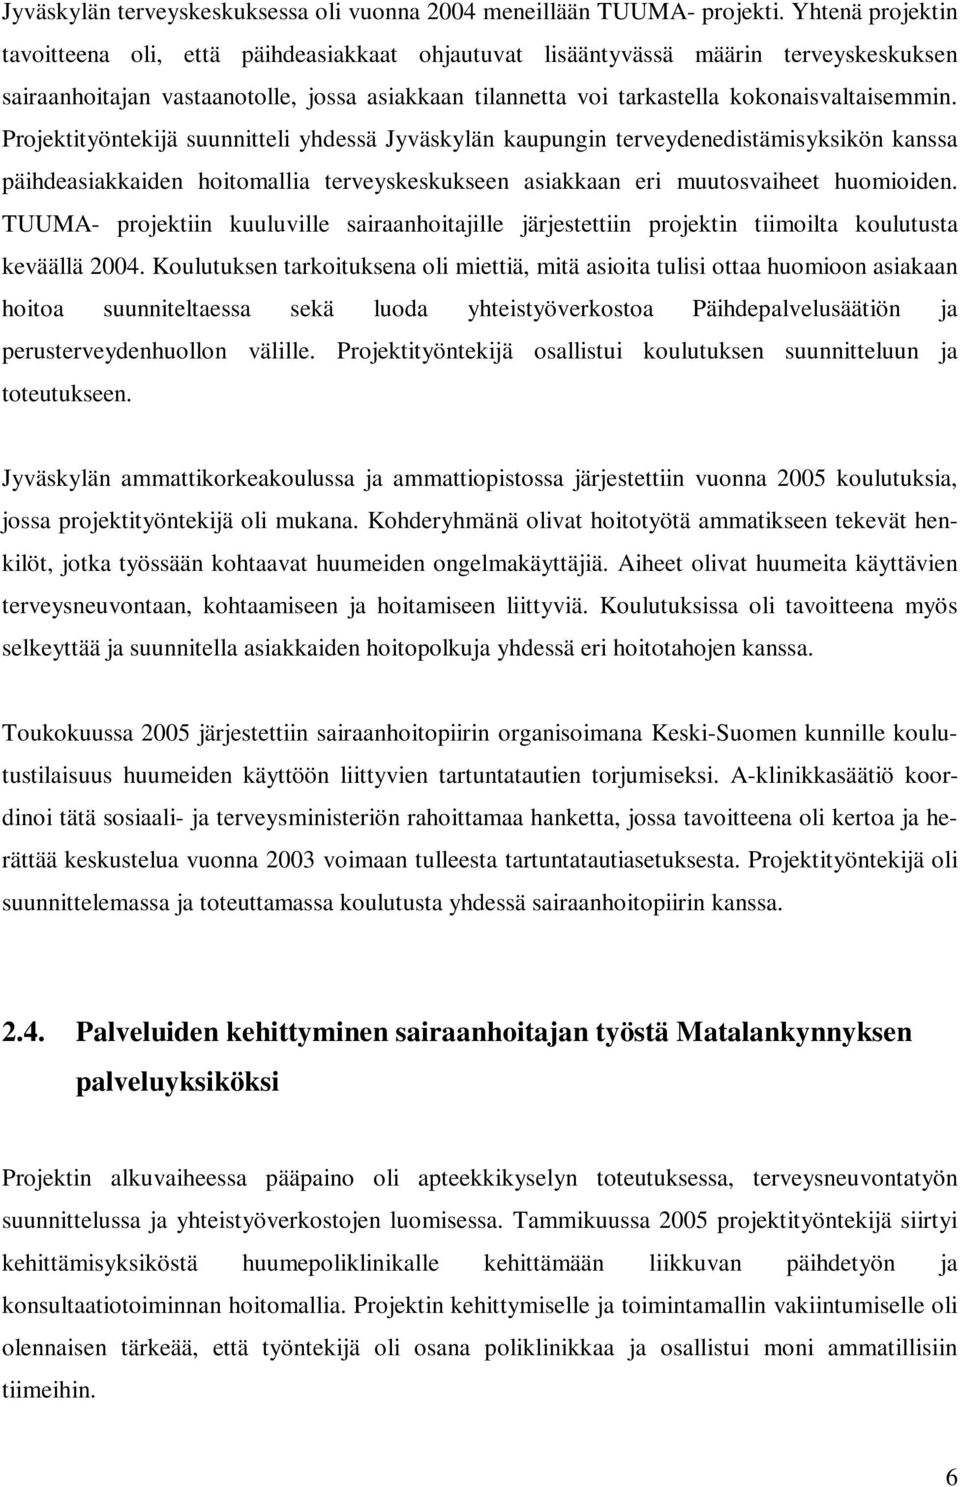 Projektityöntekijä suunnitteli yhdessä Jyväskylän kaupungin terveydenedistämisyksikön kanssa päihdeasiakkaiden hoitomallia terveyskeskukseen asiakkaan eri muutosvaiheet huomioiden.